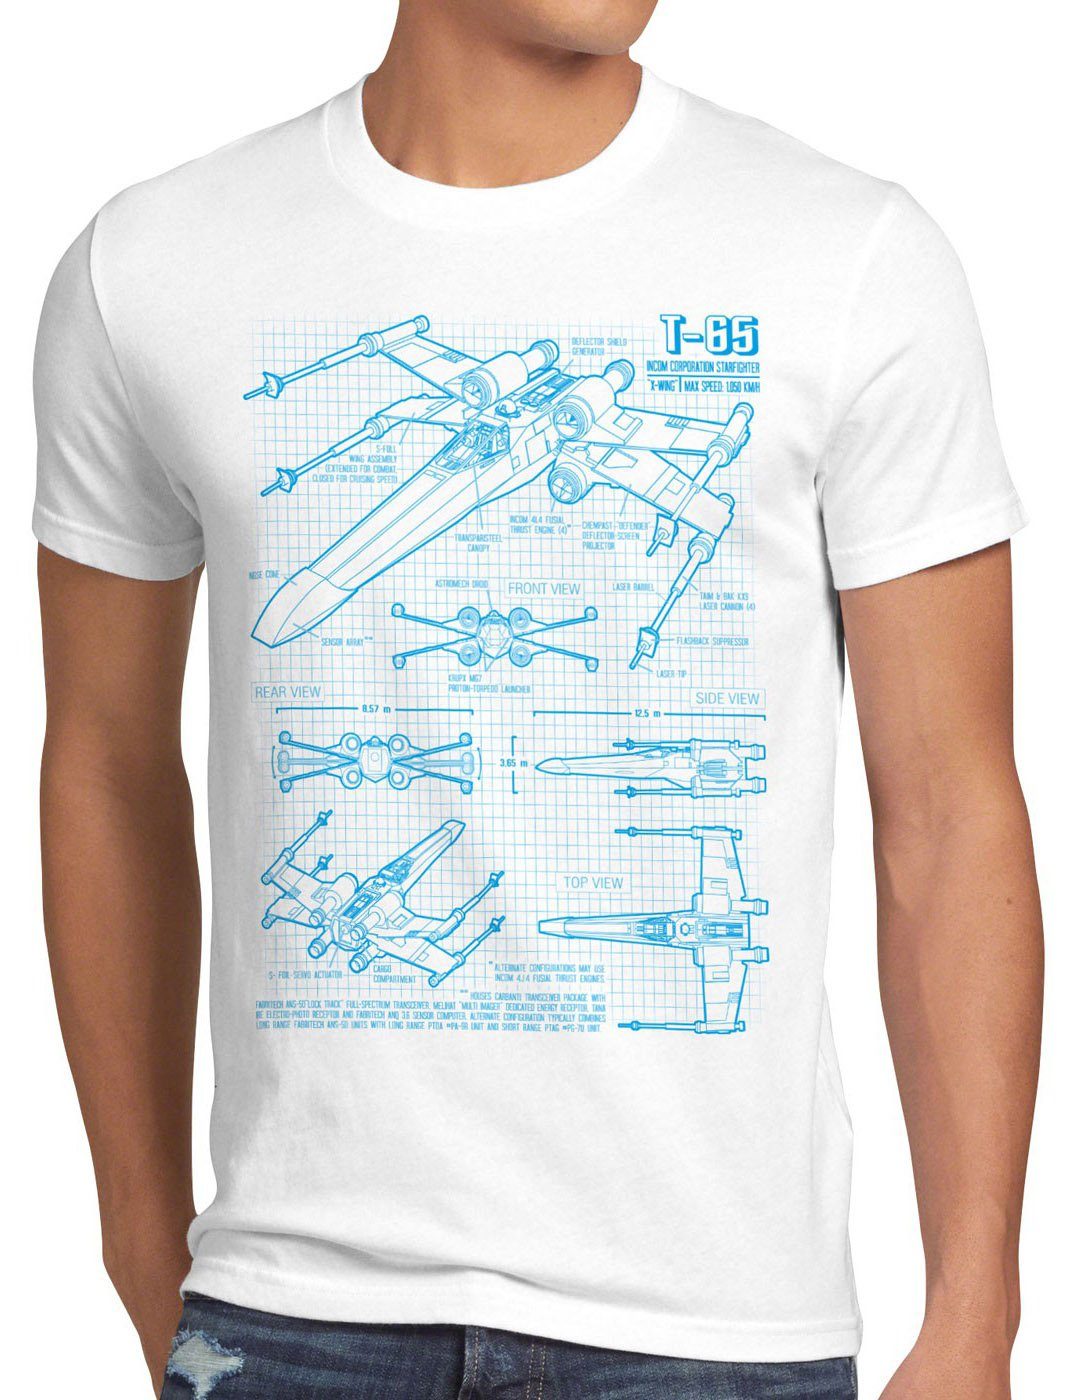 Print-Shirt darth weiß style3 Herren wars battlefront Jäger x-flühler T-65 T-Shirt rebellion wing star